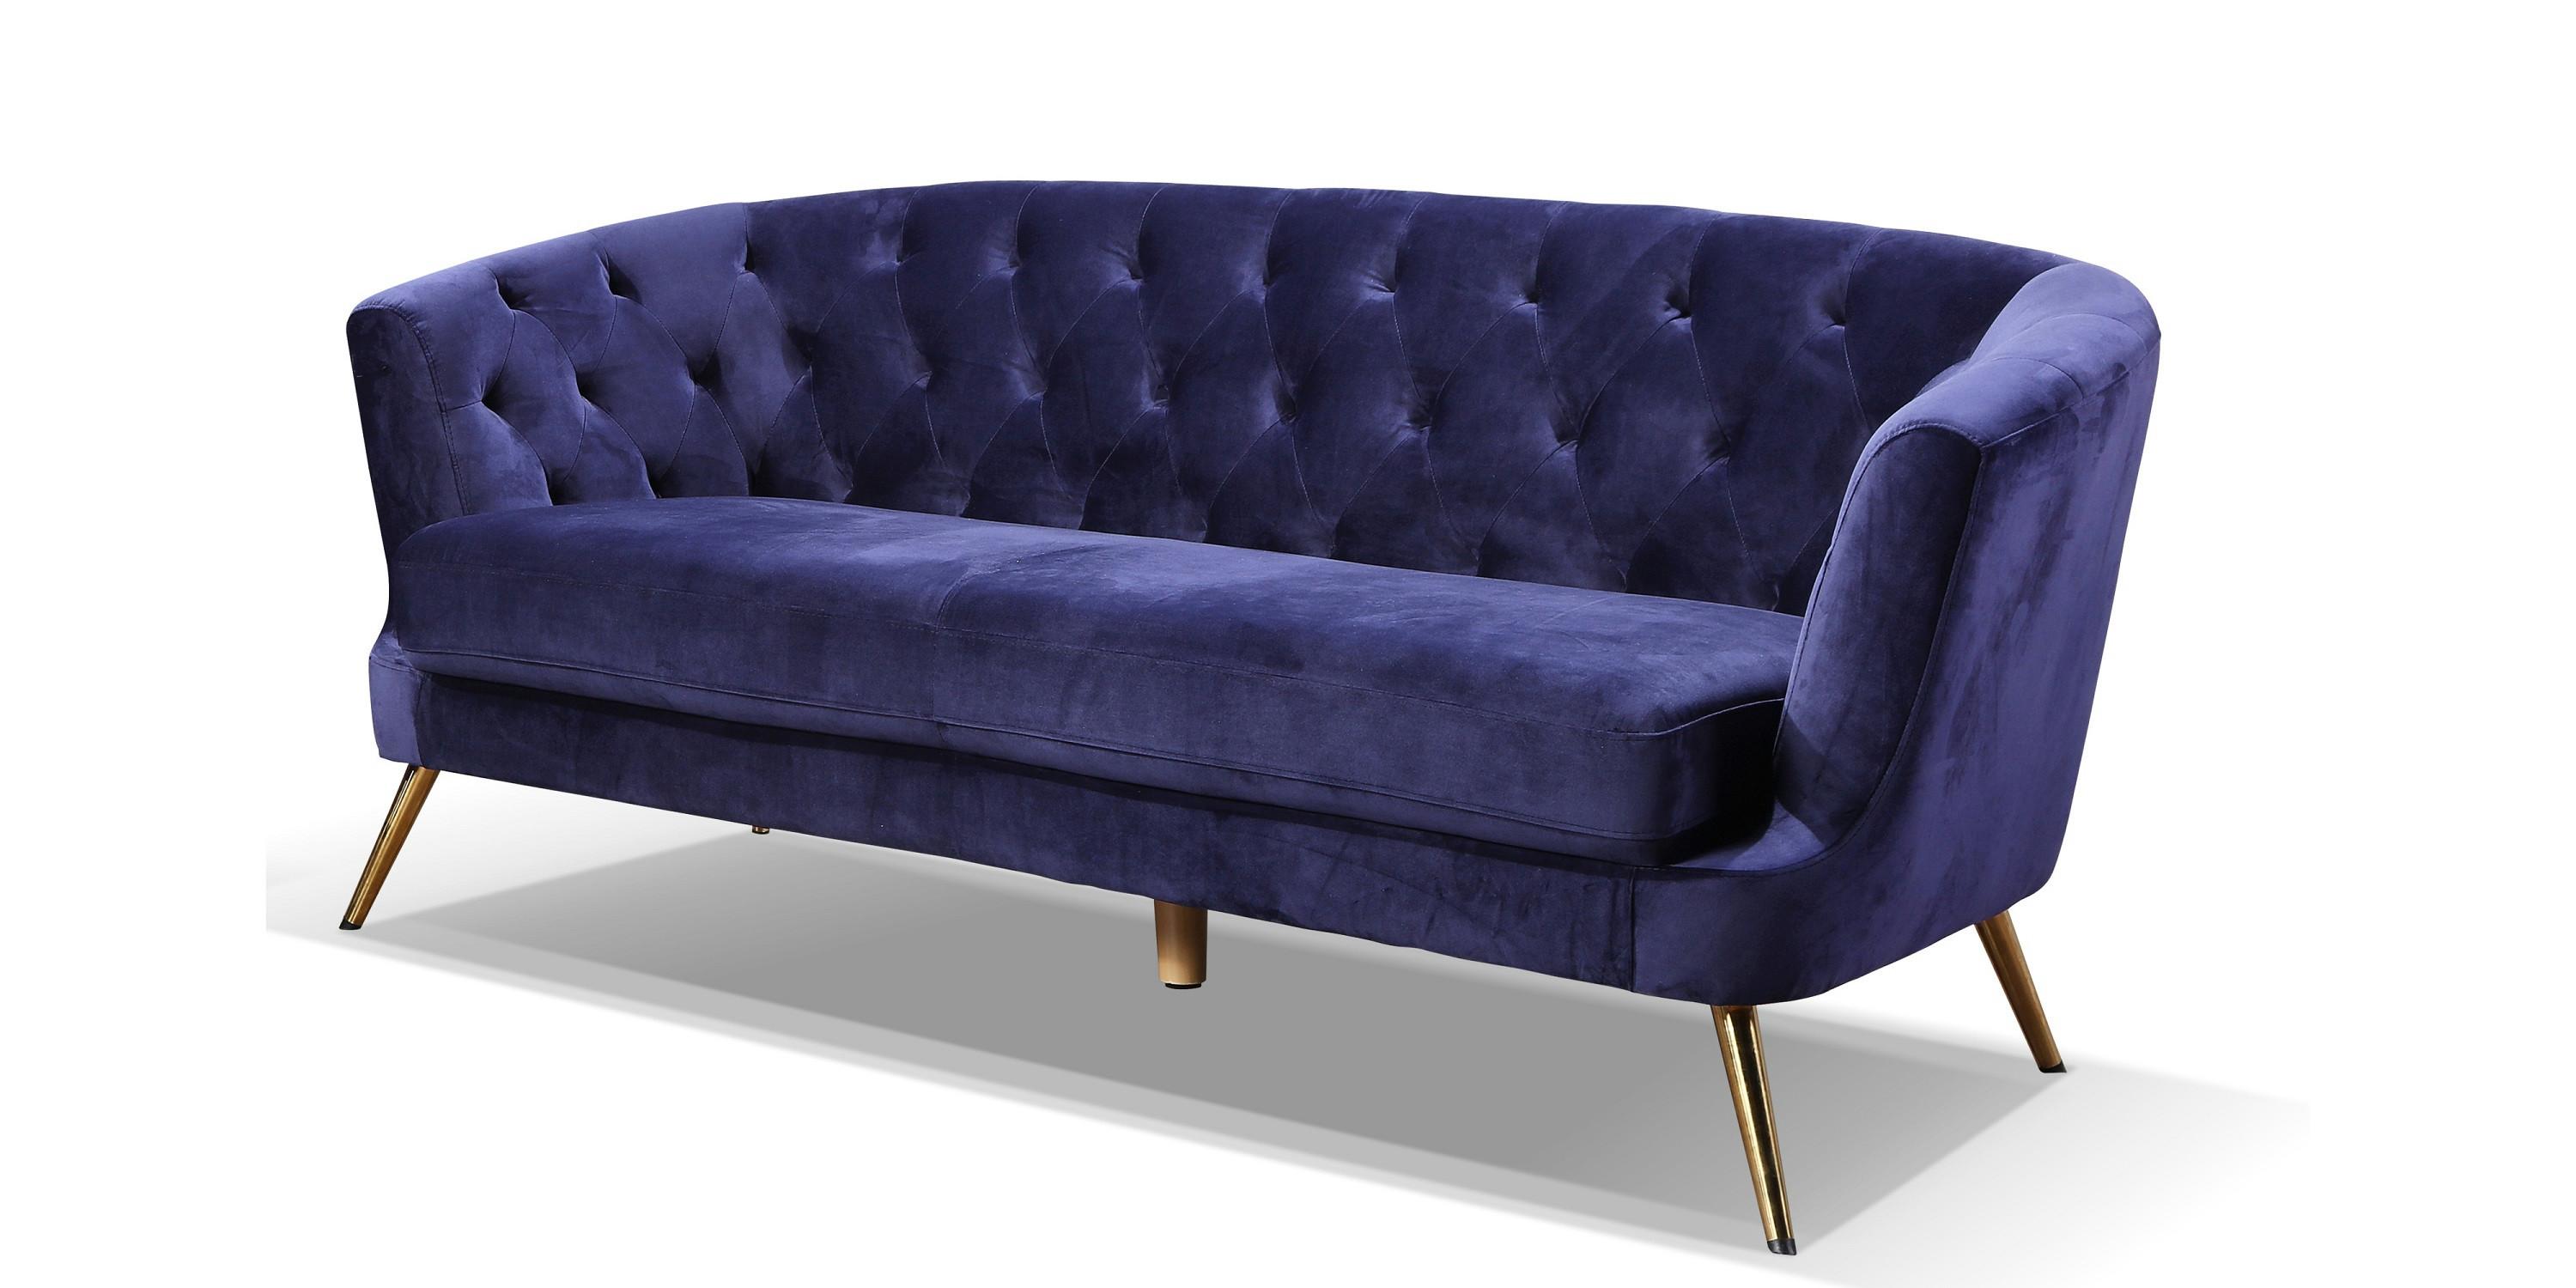 Dreisitzer Sofa Mit Samtbezug In Blau Entdecken